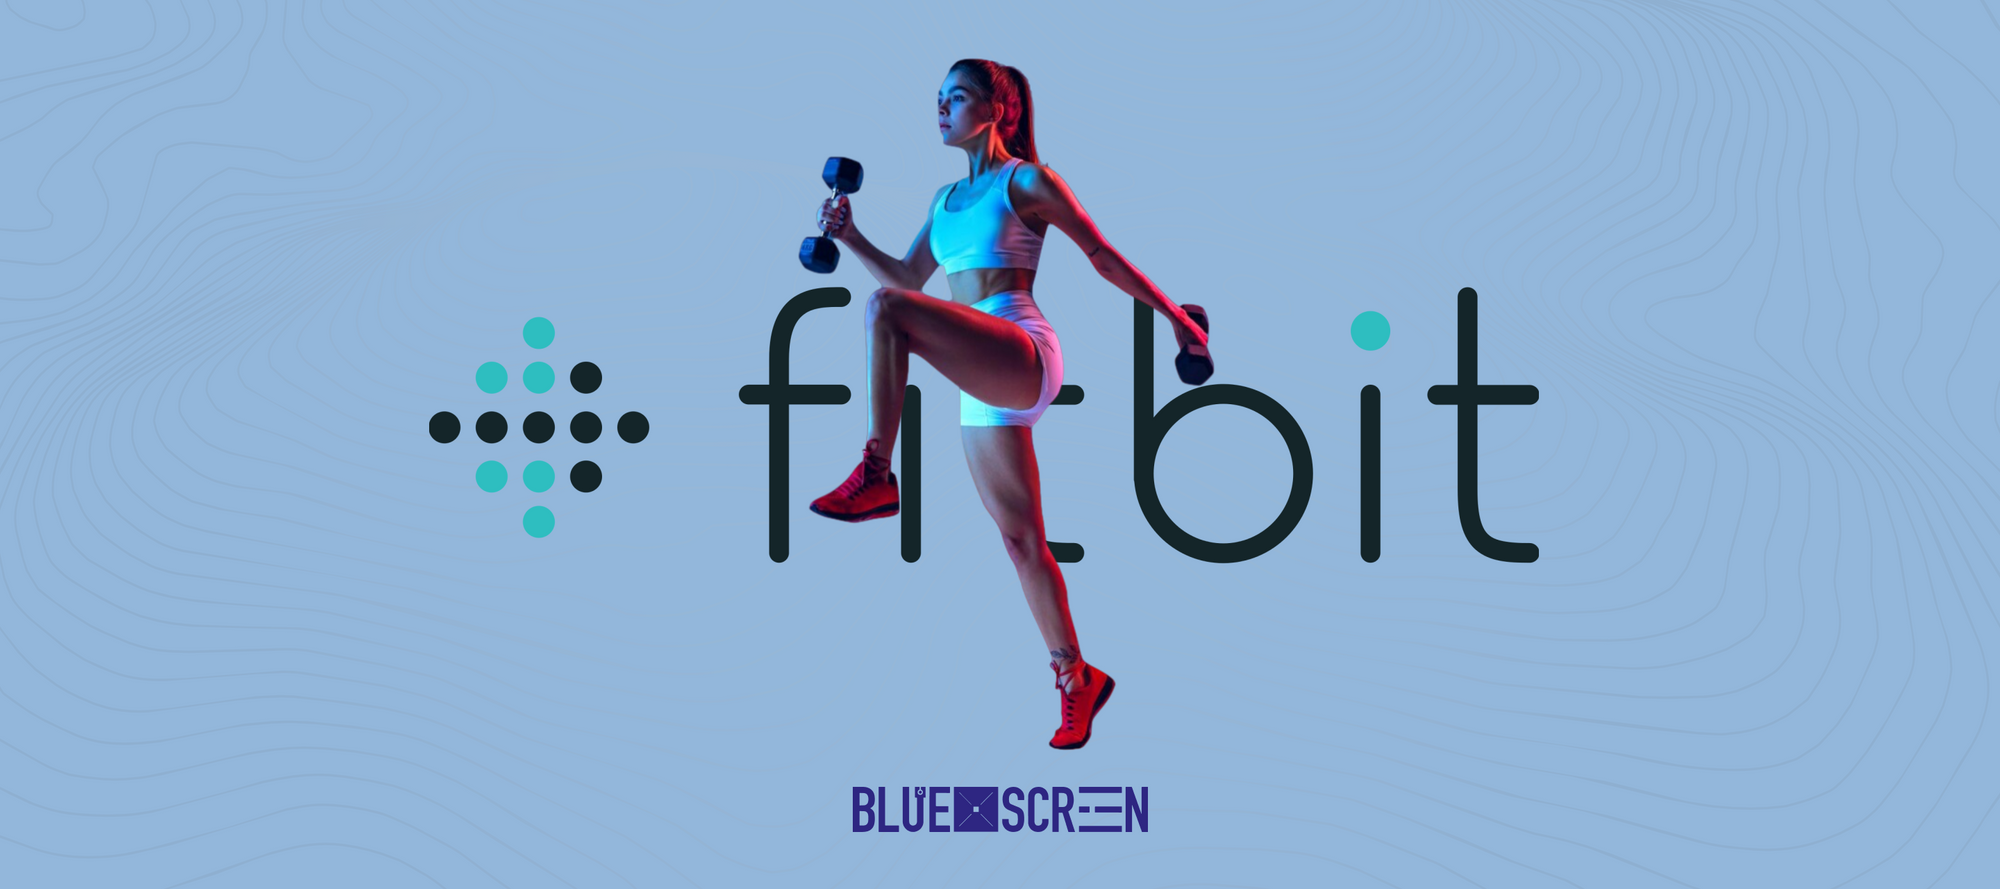 Достижение фитнес-целей с Fitbit. Как лучше настроить?